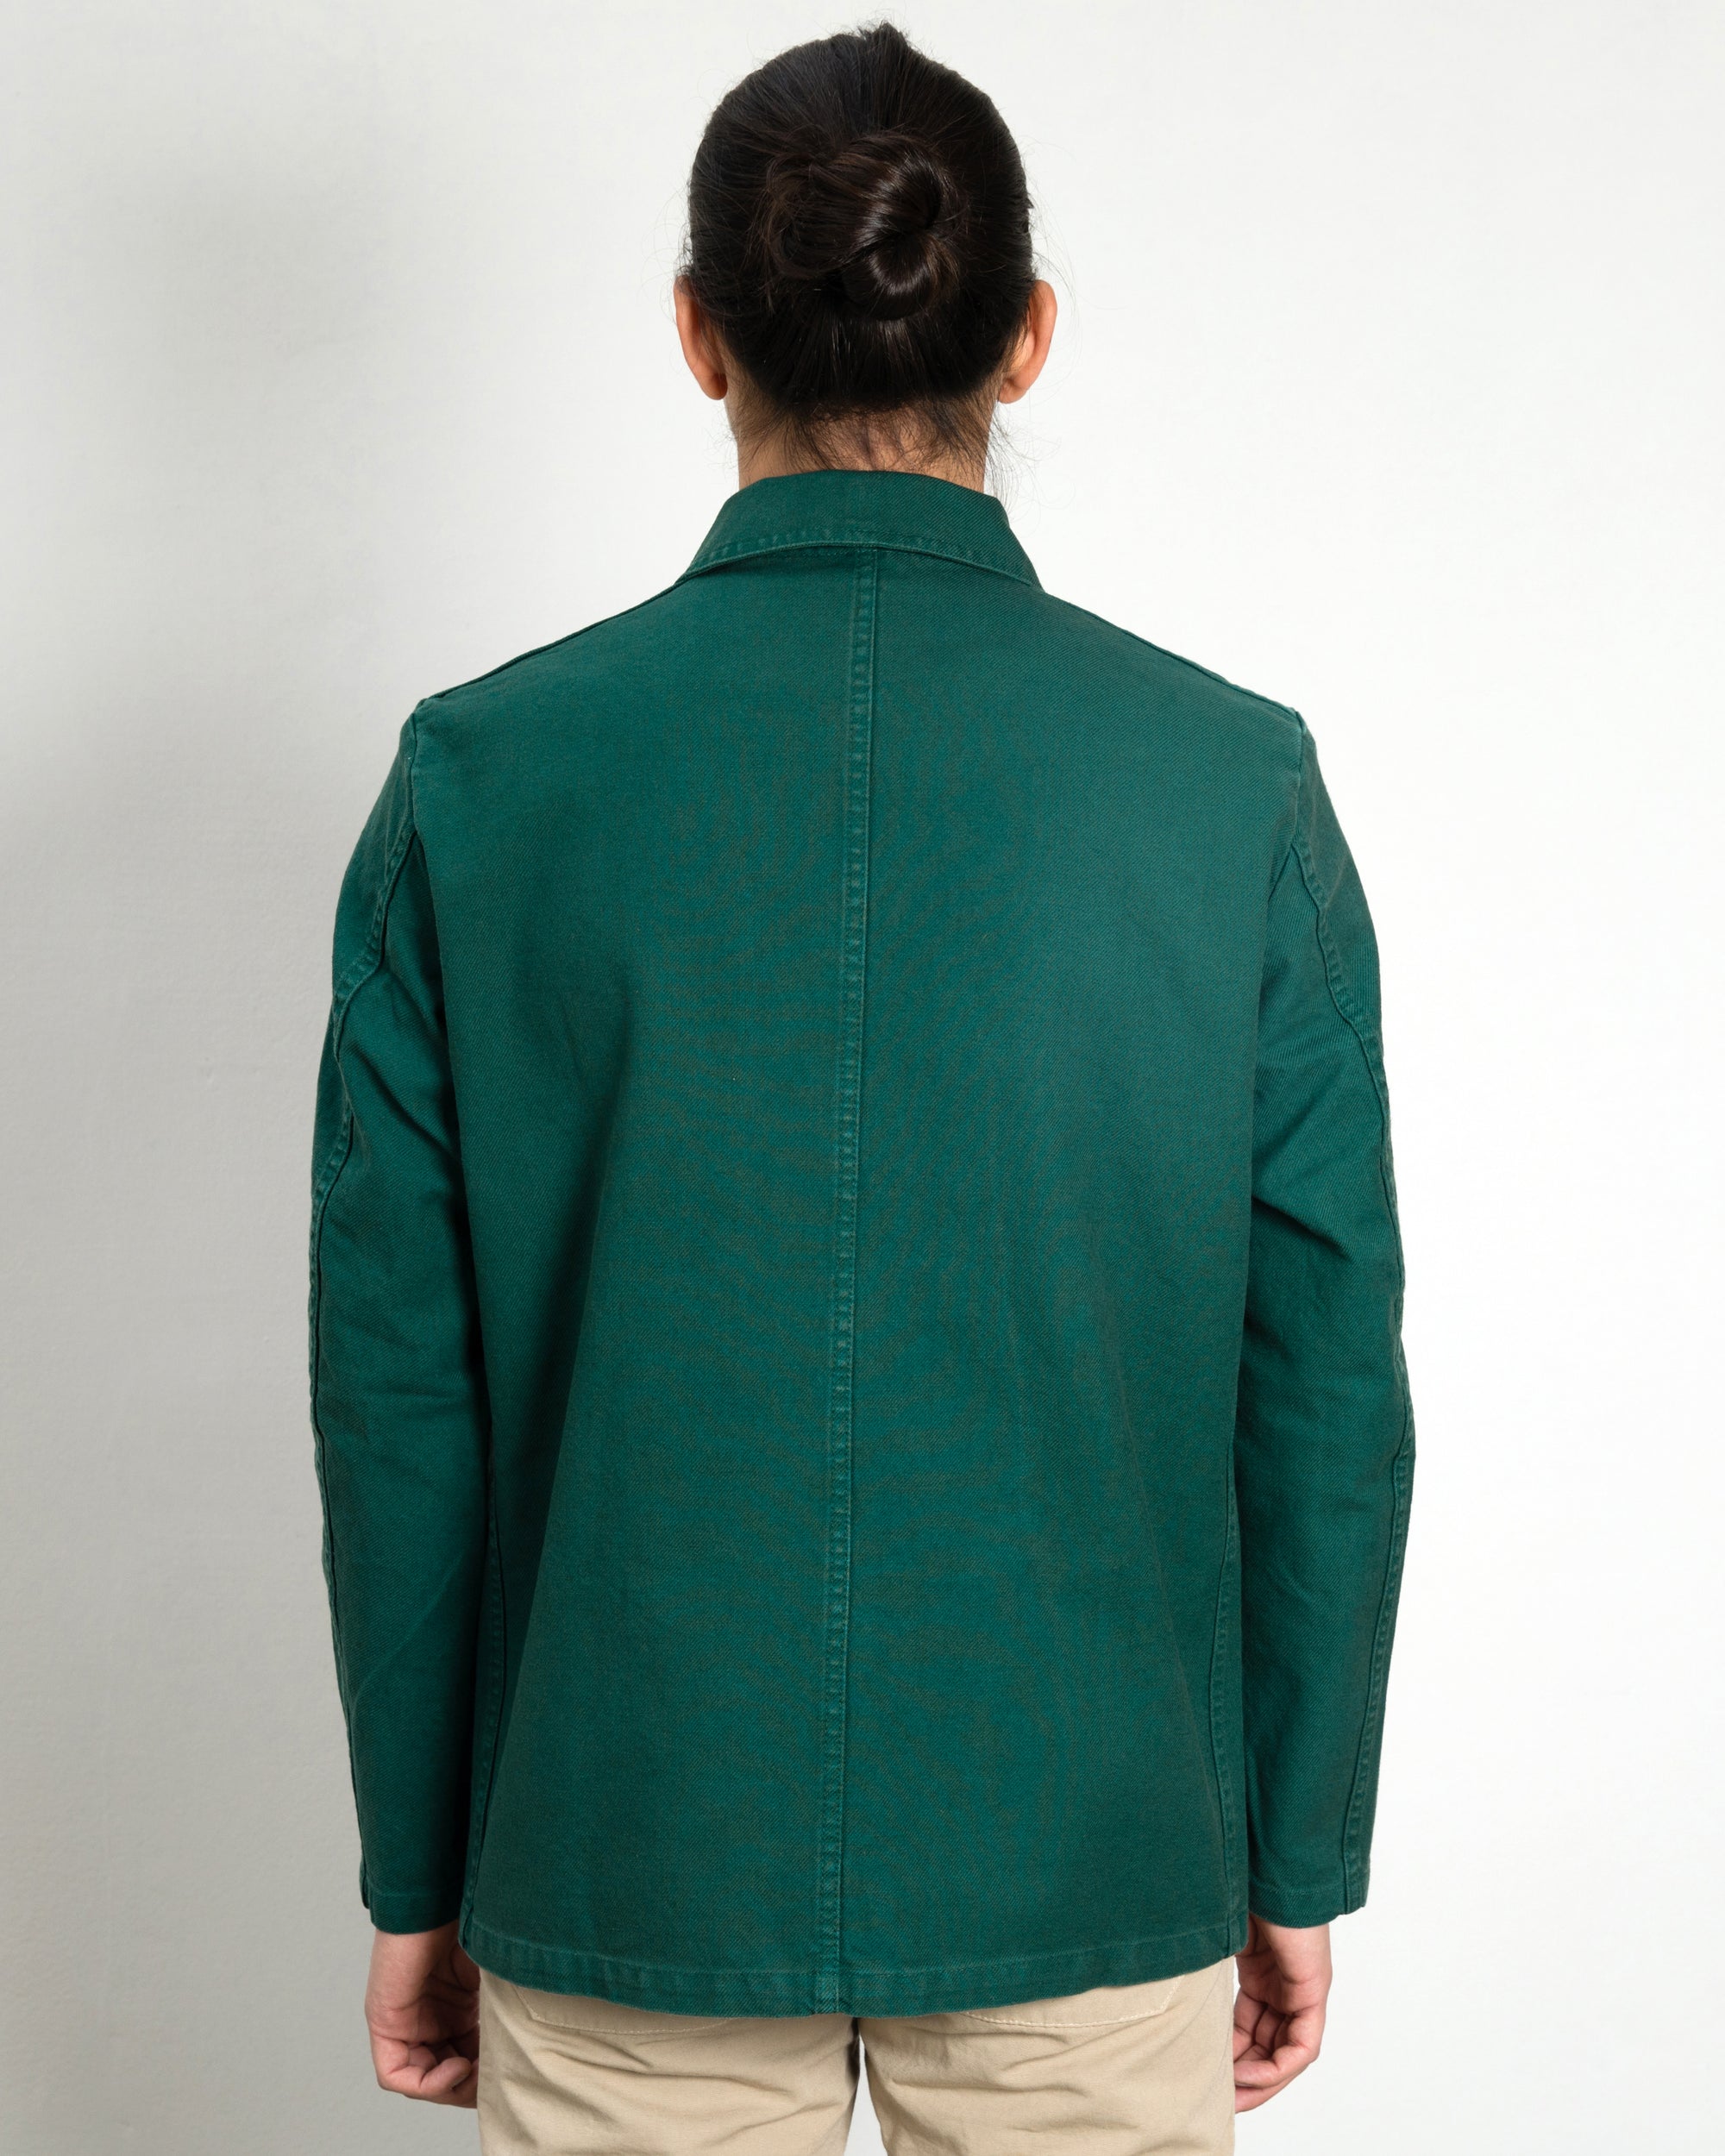 Workwear Jacket 5C in Twill Fabric - Bottle